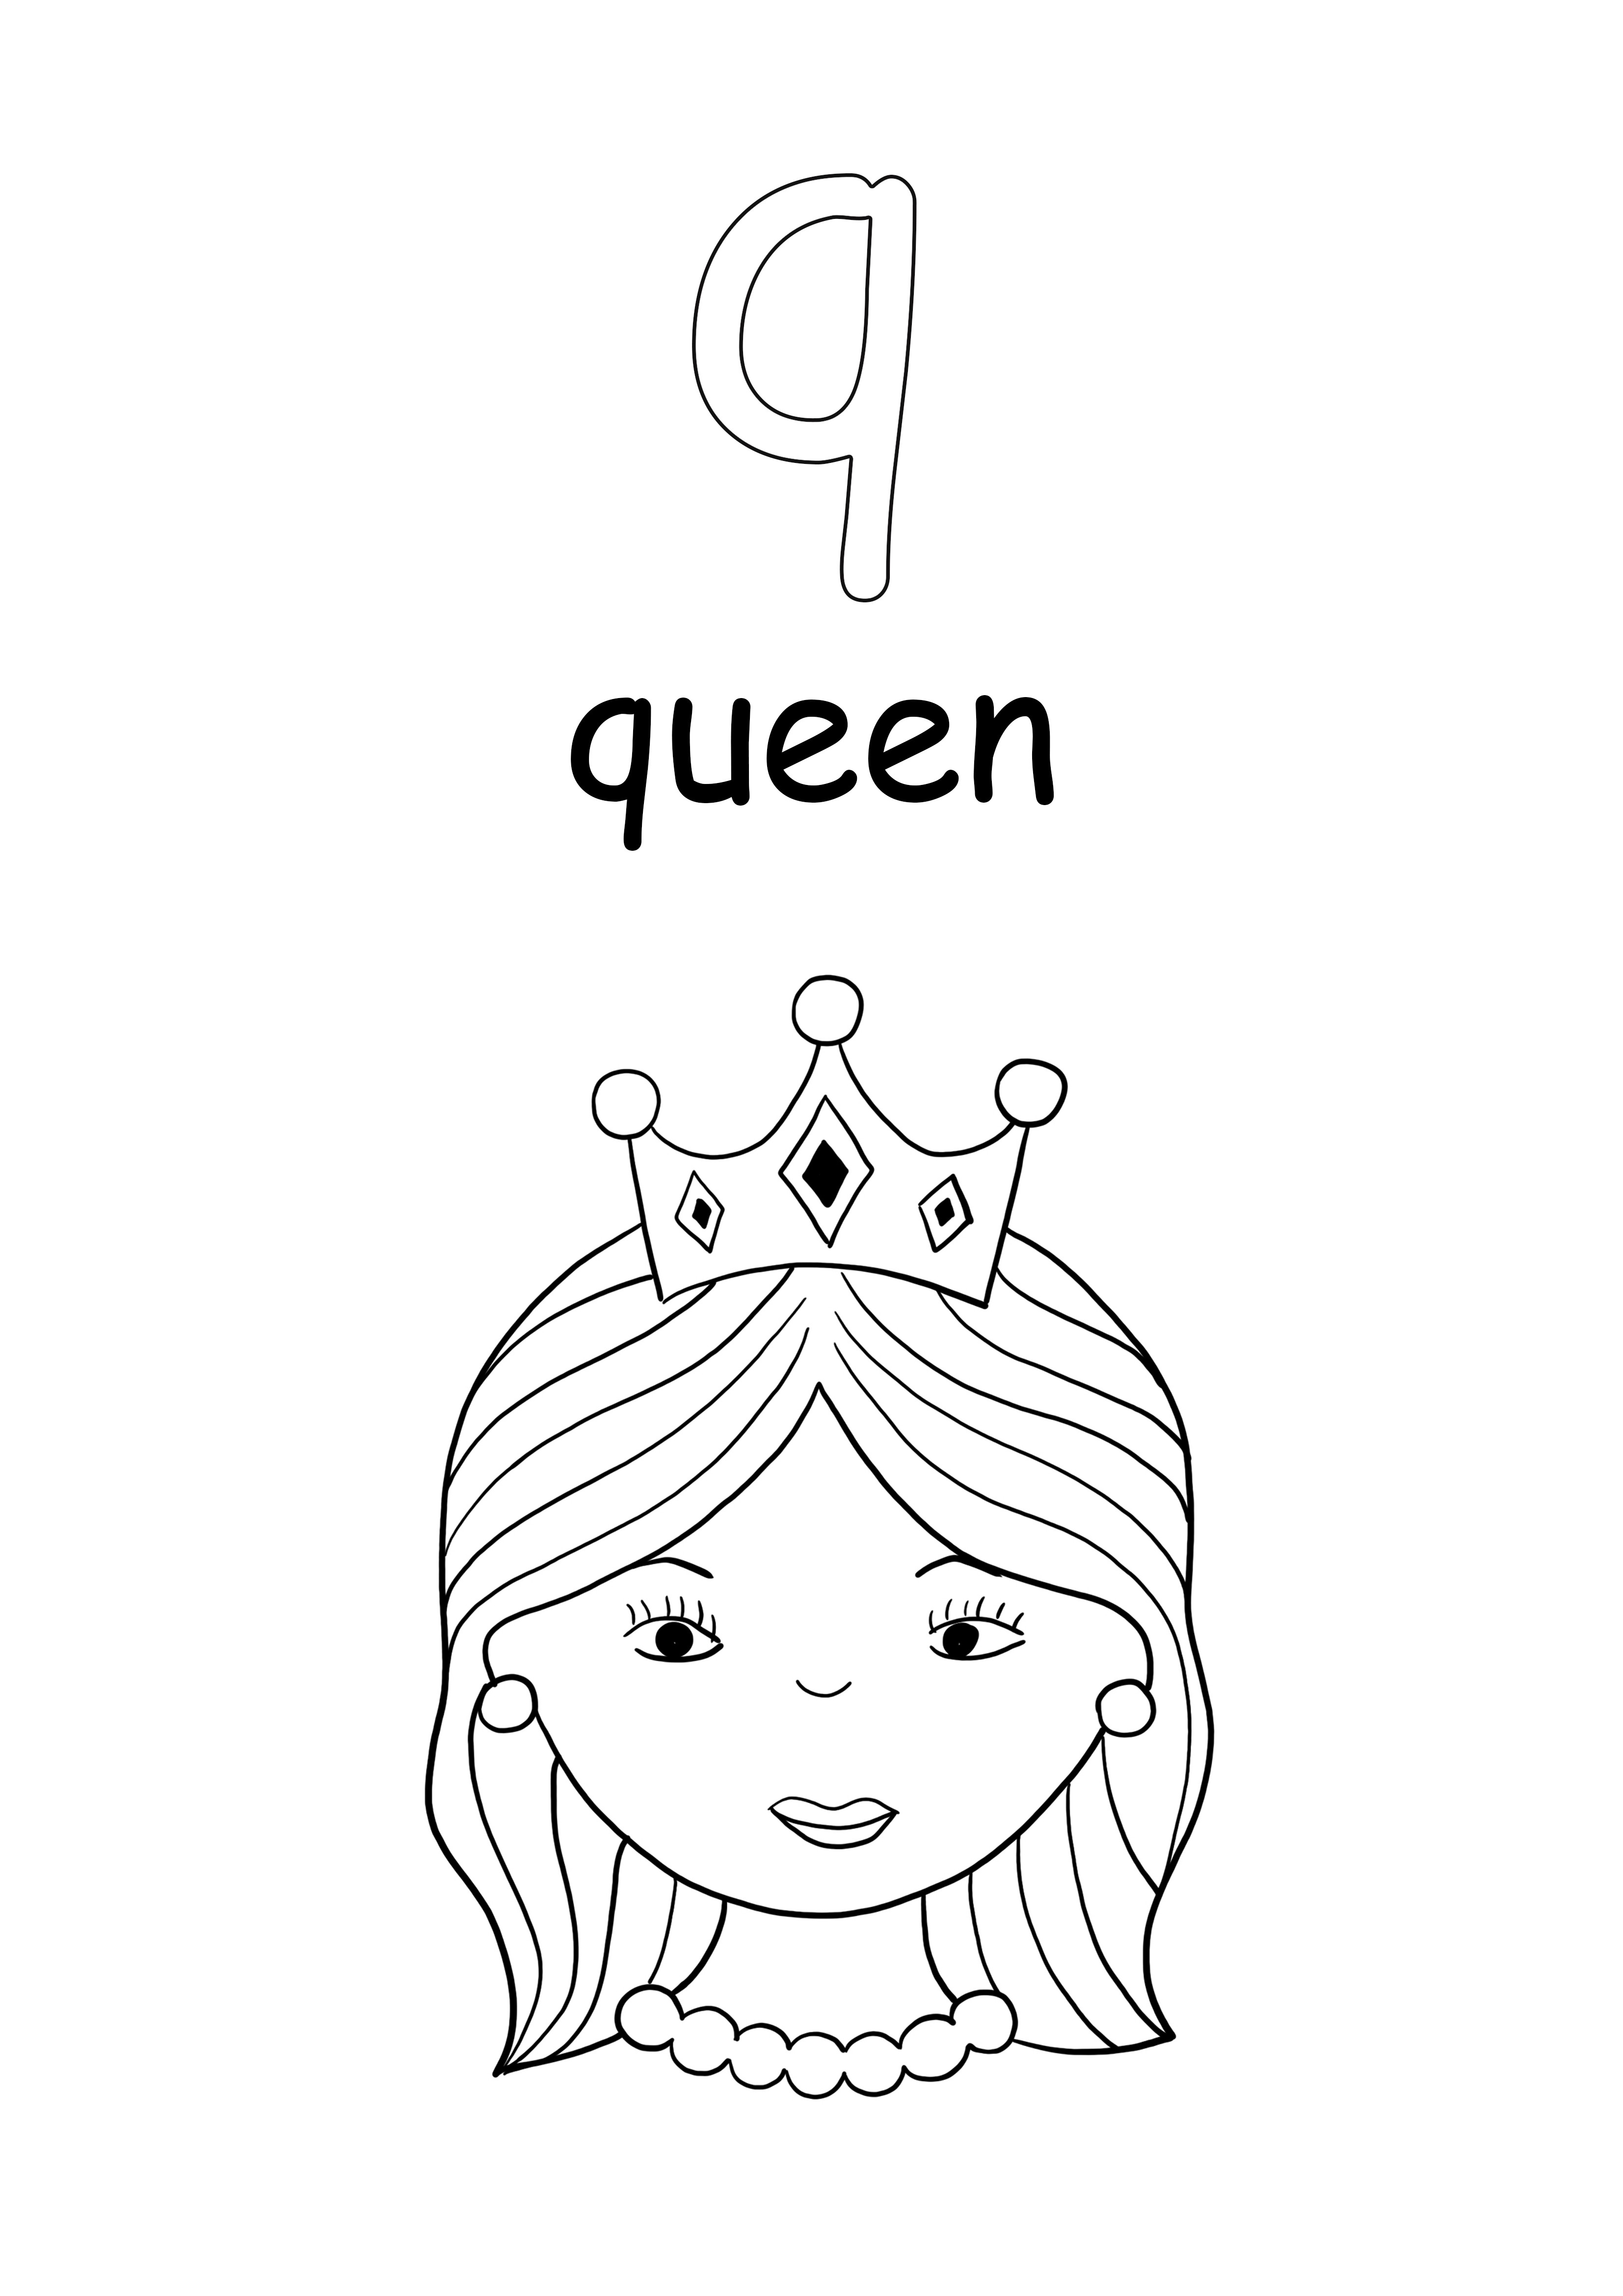 Kisbetűs szó királynő és q betű színezése és letöltése ingyen